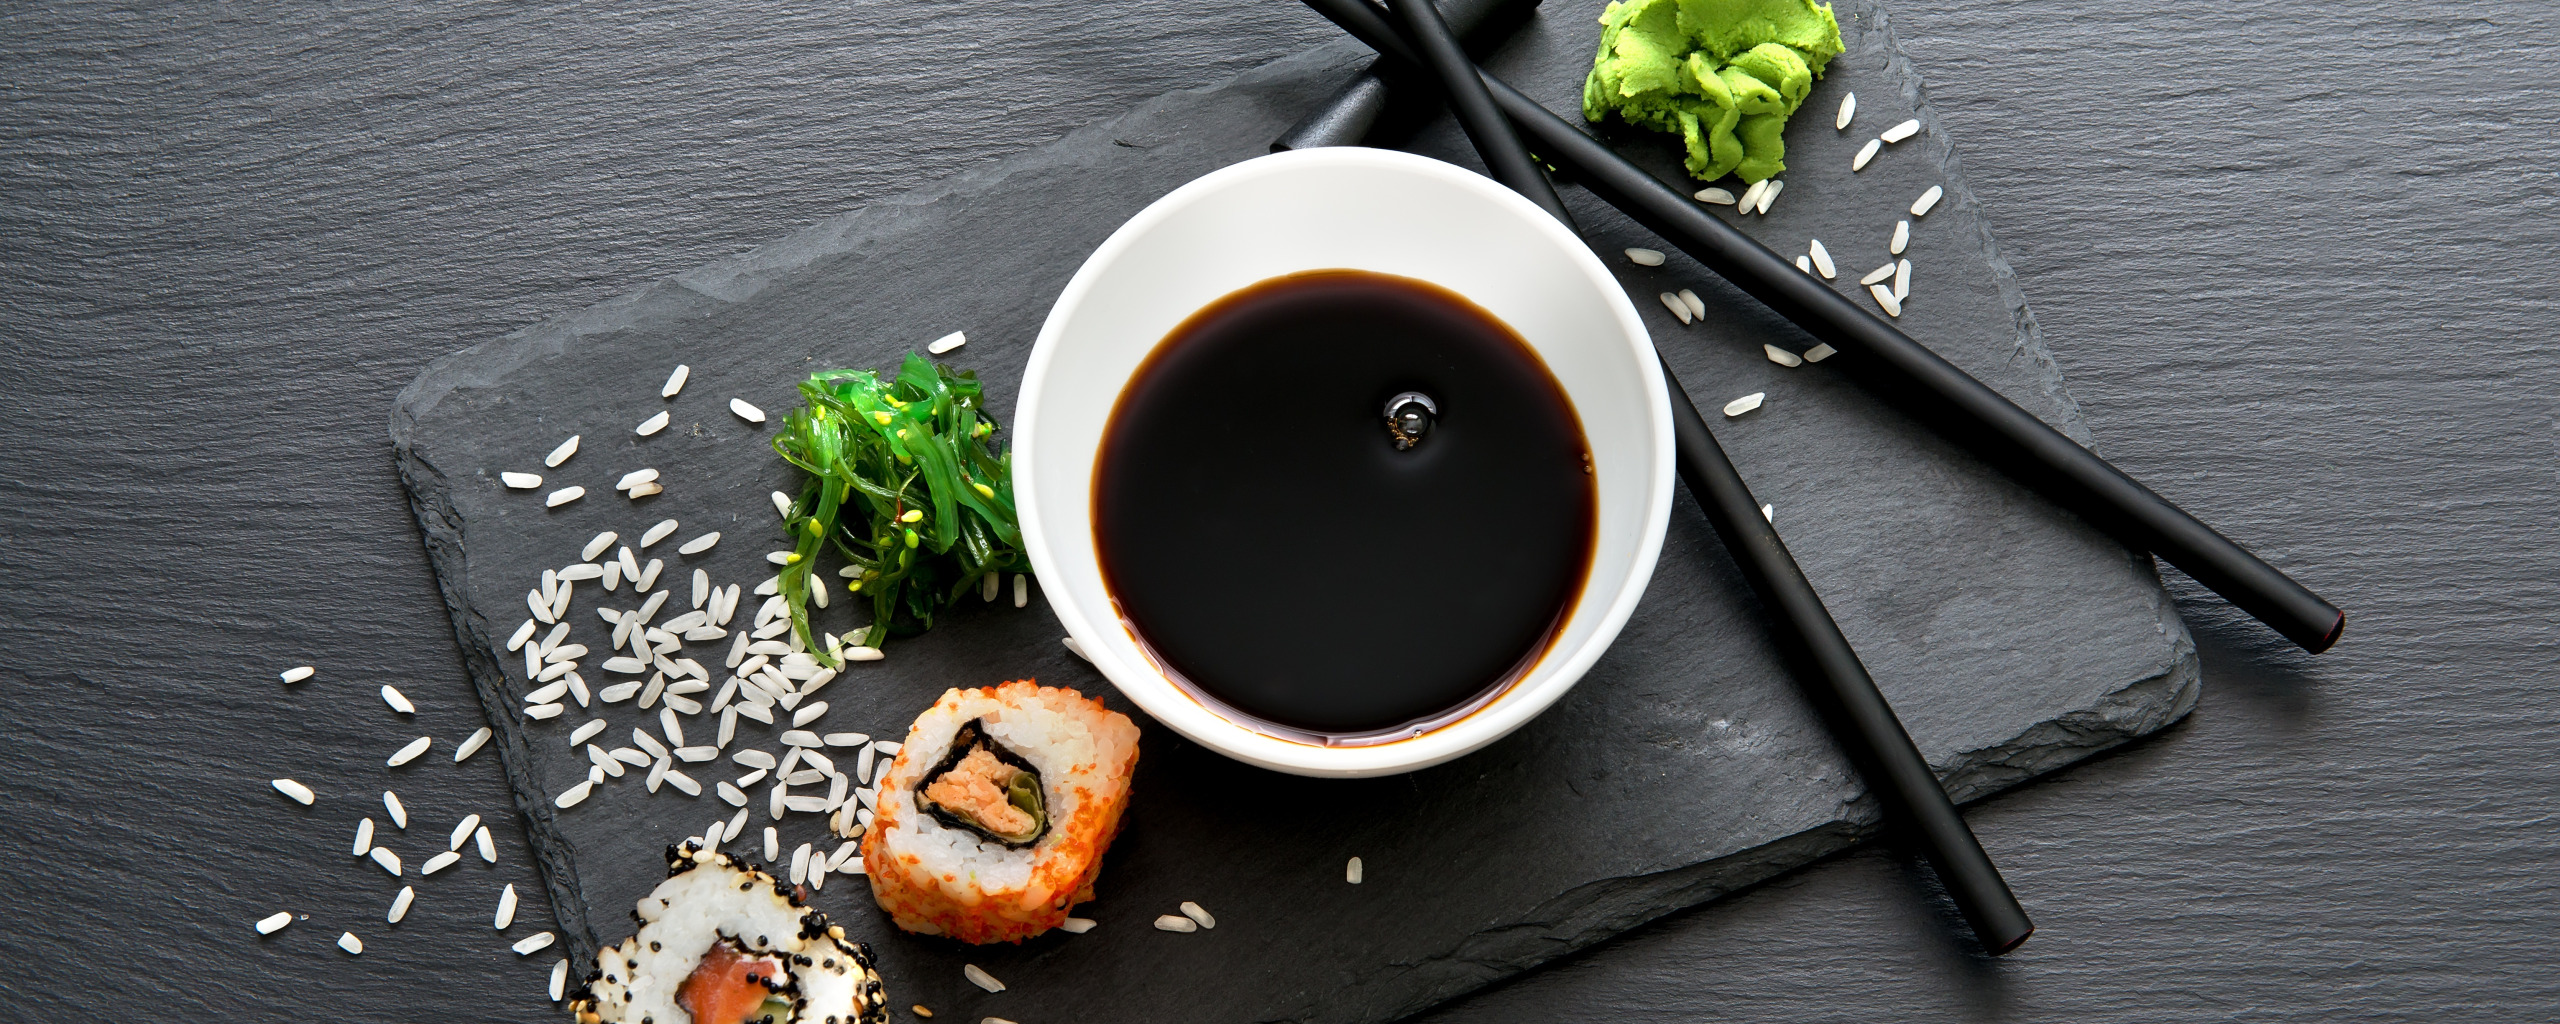 Рецепт соуса запеченных суши фото 100